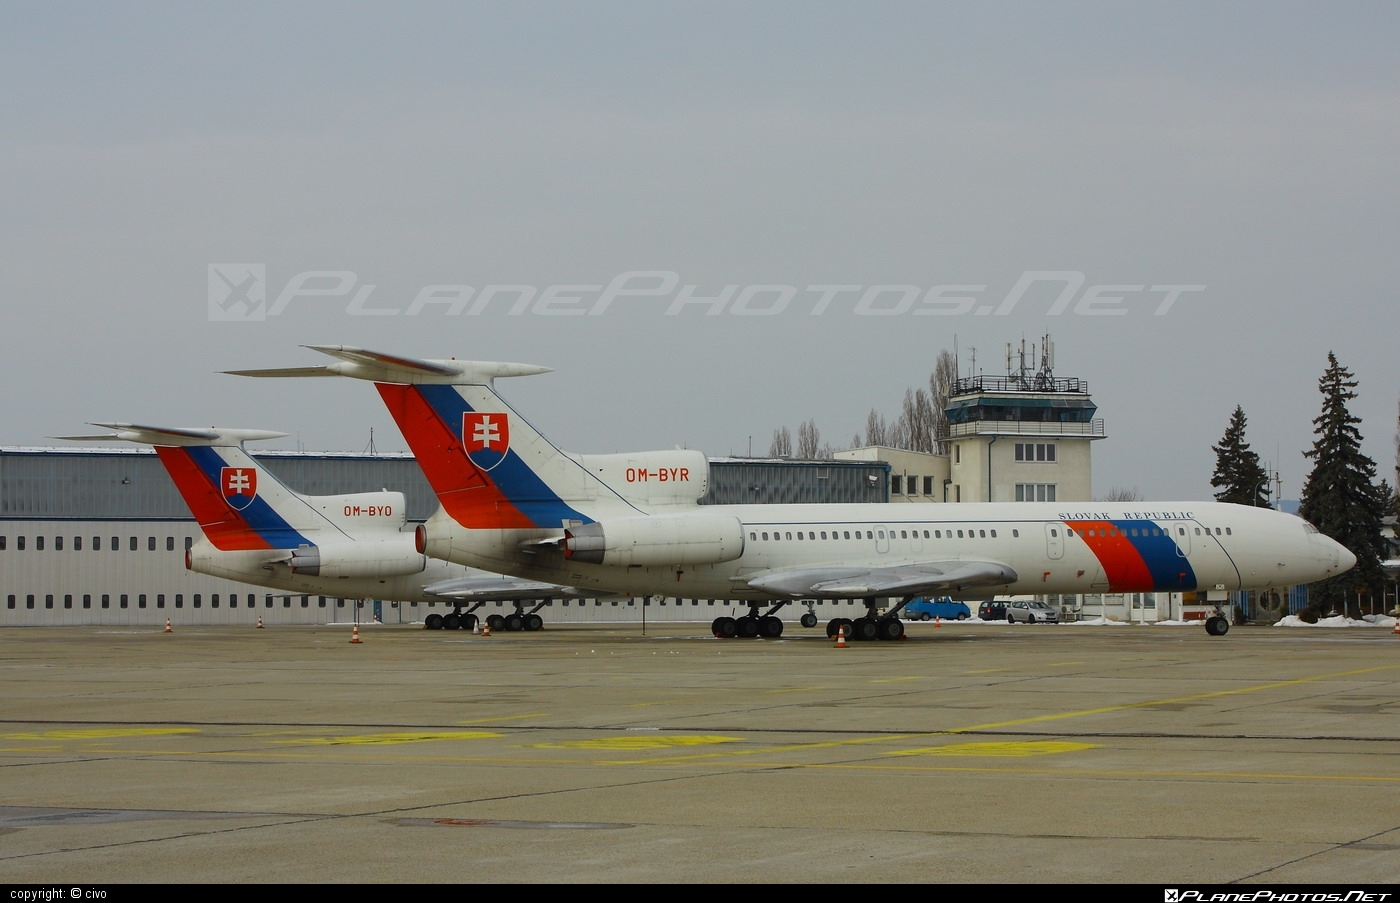 Tupolev Tu-154M - OM-BYR operated by Letecký útvar MV SR (Slovak Government Flying Service) #SlovakGovernmentFlyingService #leteckyutvarMVSR #tu154 #tu154m #tupolev